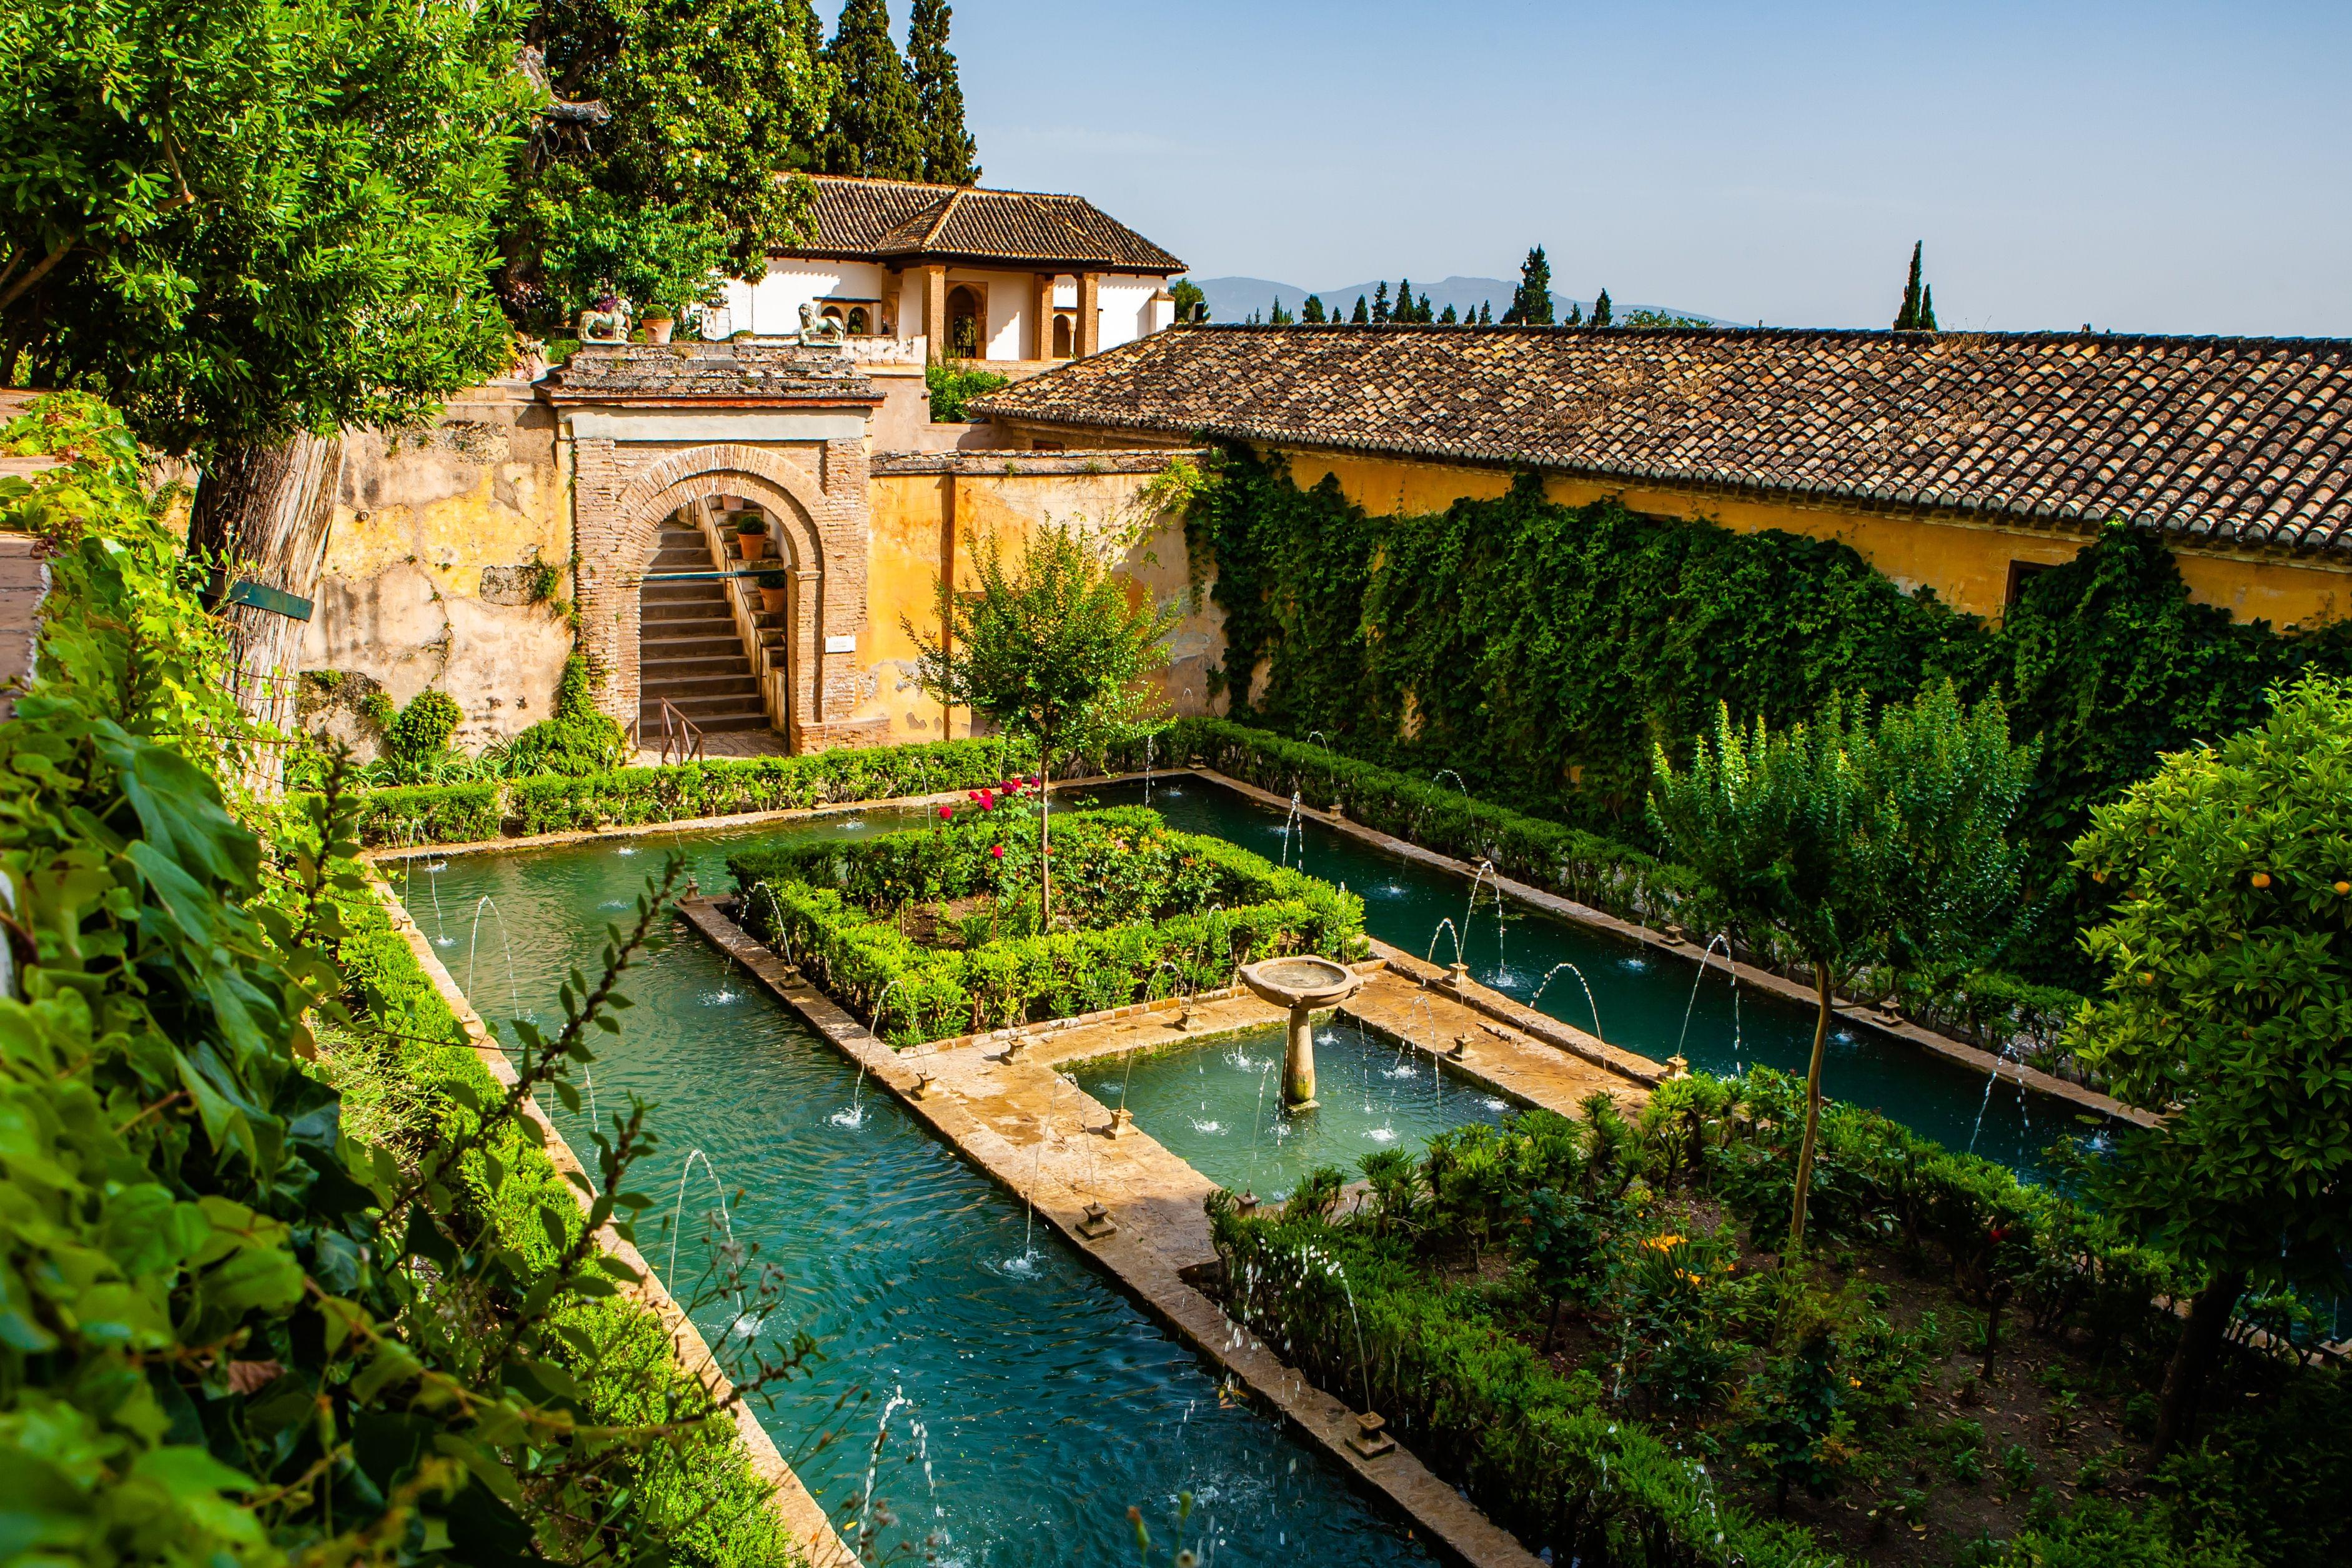 Granada Historical Sites